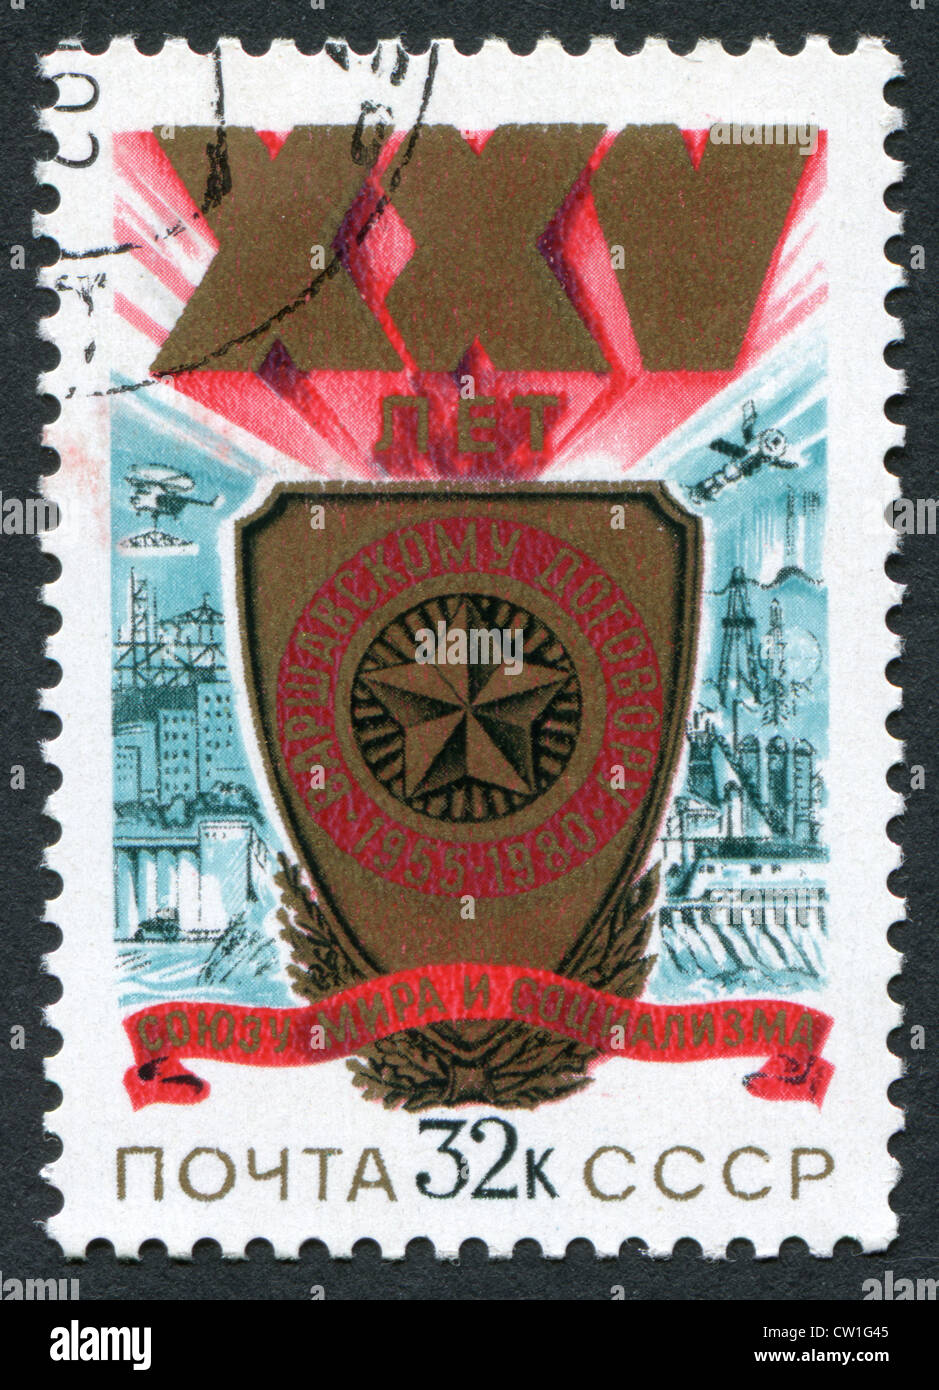 Urss-VERS 1980 : timbre imprimé dans l'URSS, 25 ans du Pacte de Varsovie, vers 1980 Banque D'Images